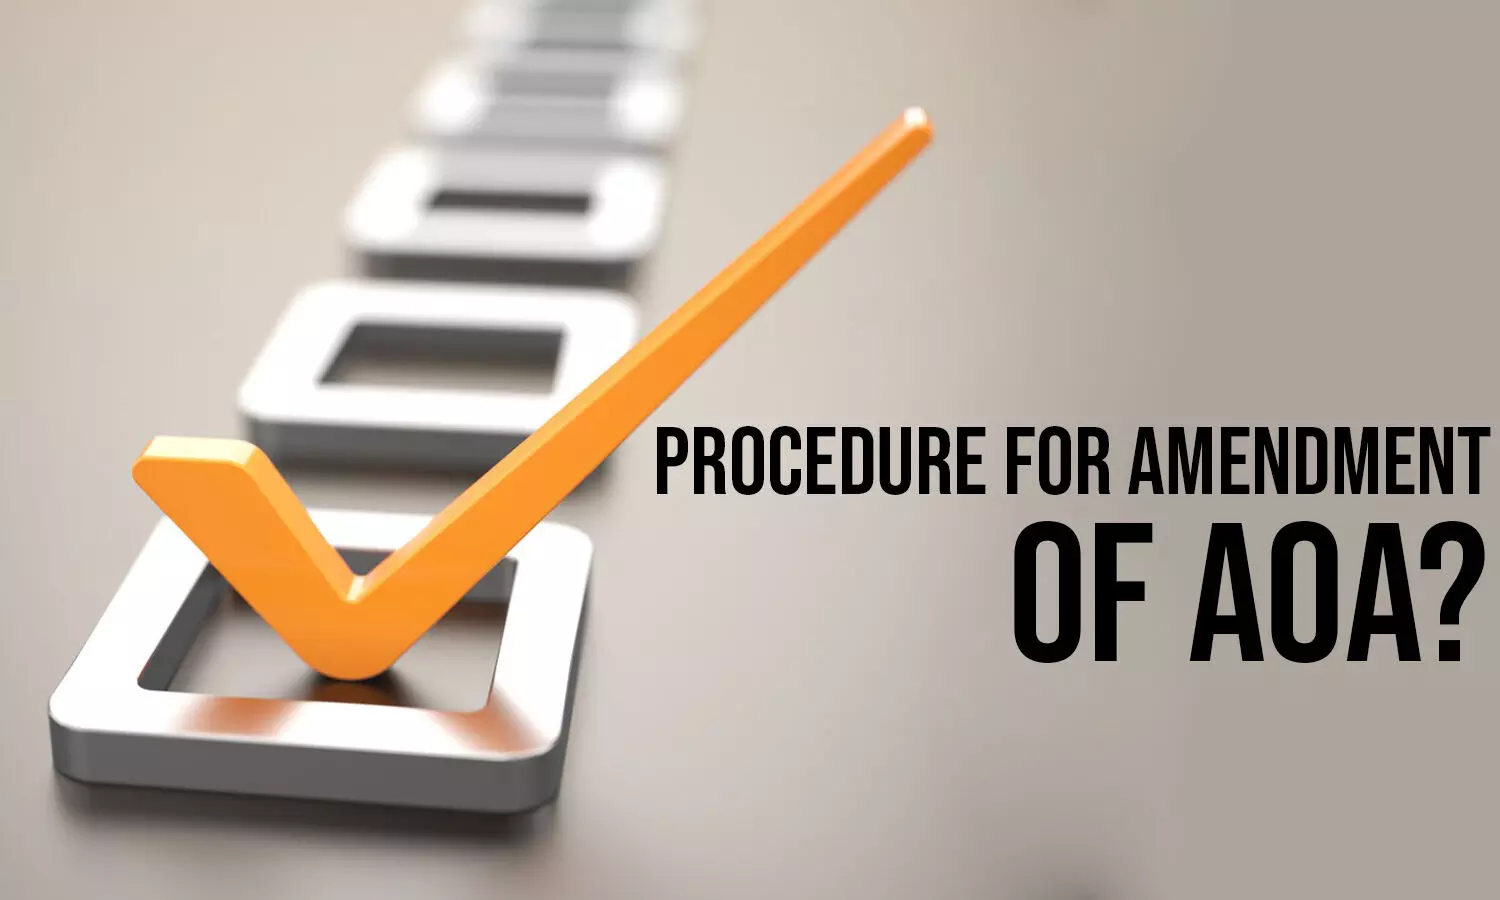 Procedure for Amendment of AOA?